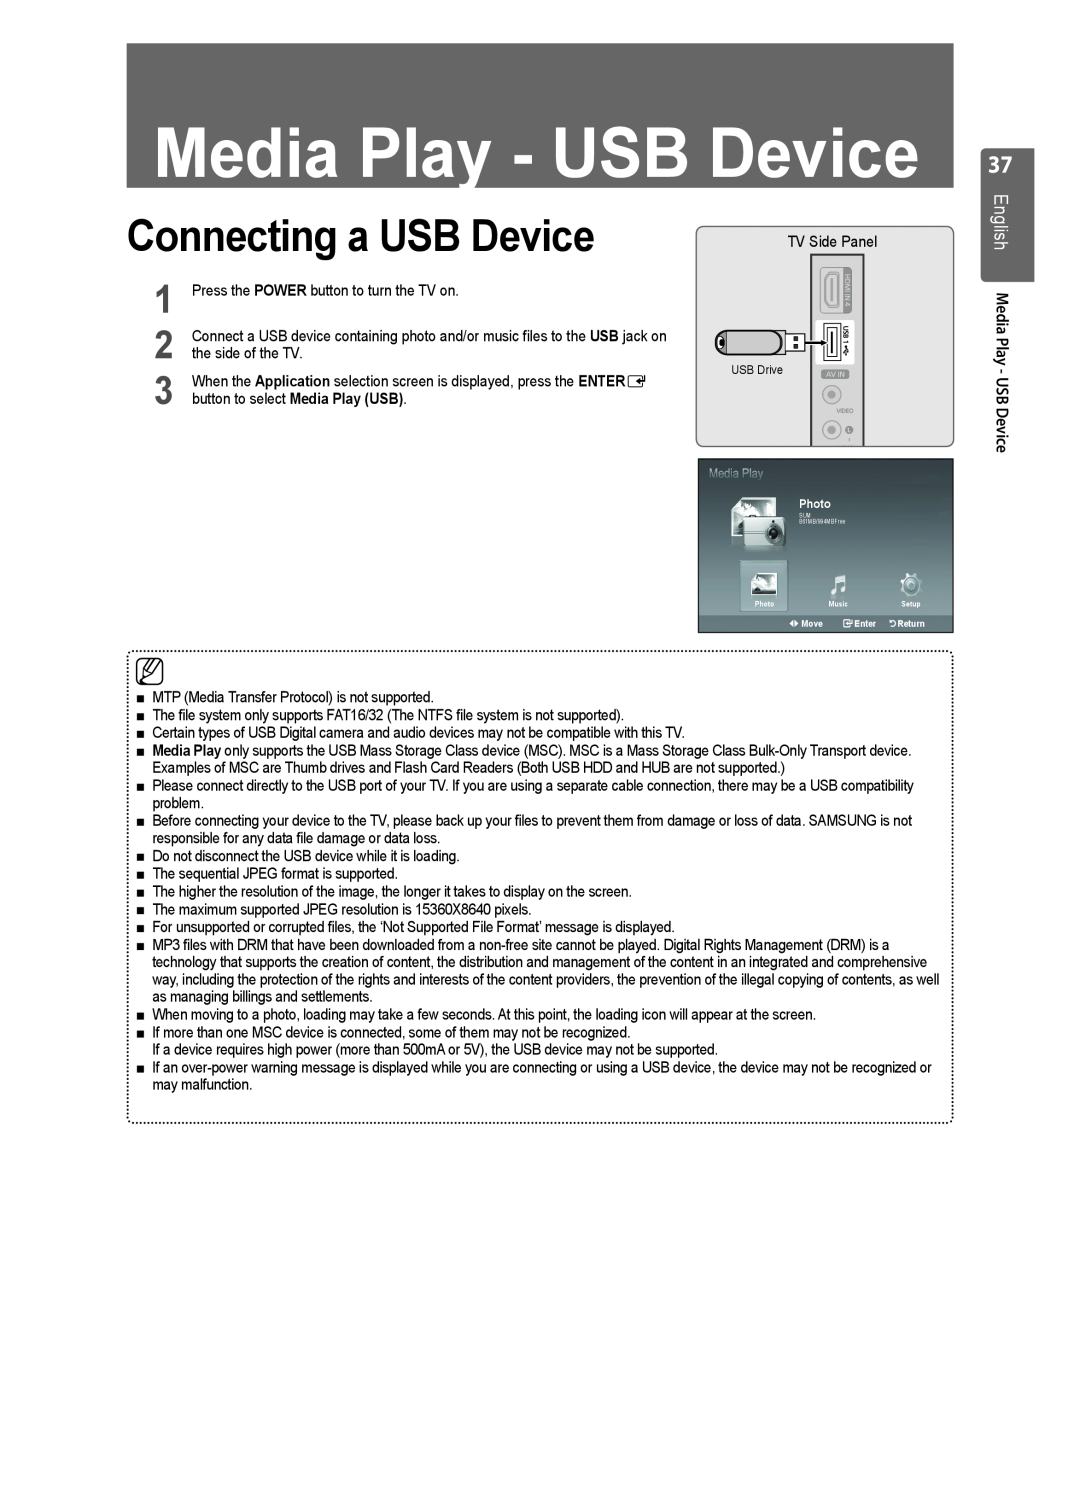 Samsung LE46B553, LE40B550, LE40B554, LE40B551, LE40B553 Connecting a USB Device, English Media Play - USB Device 